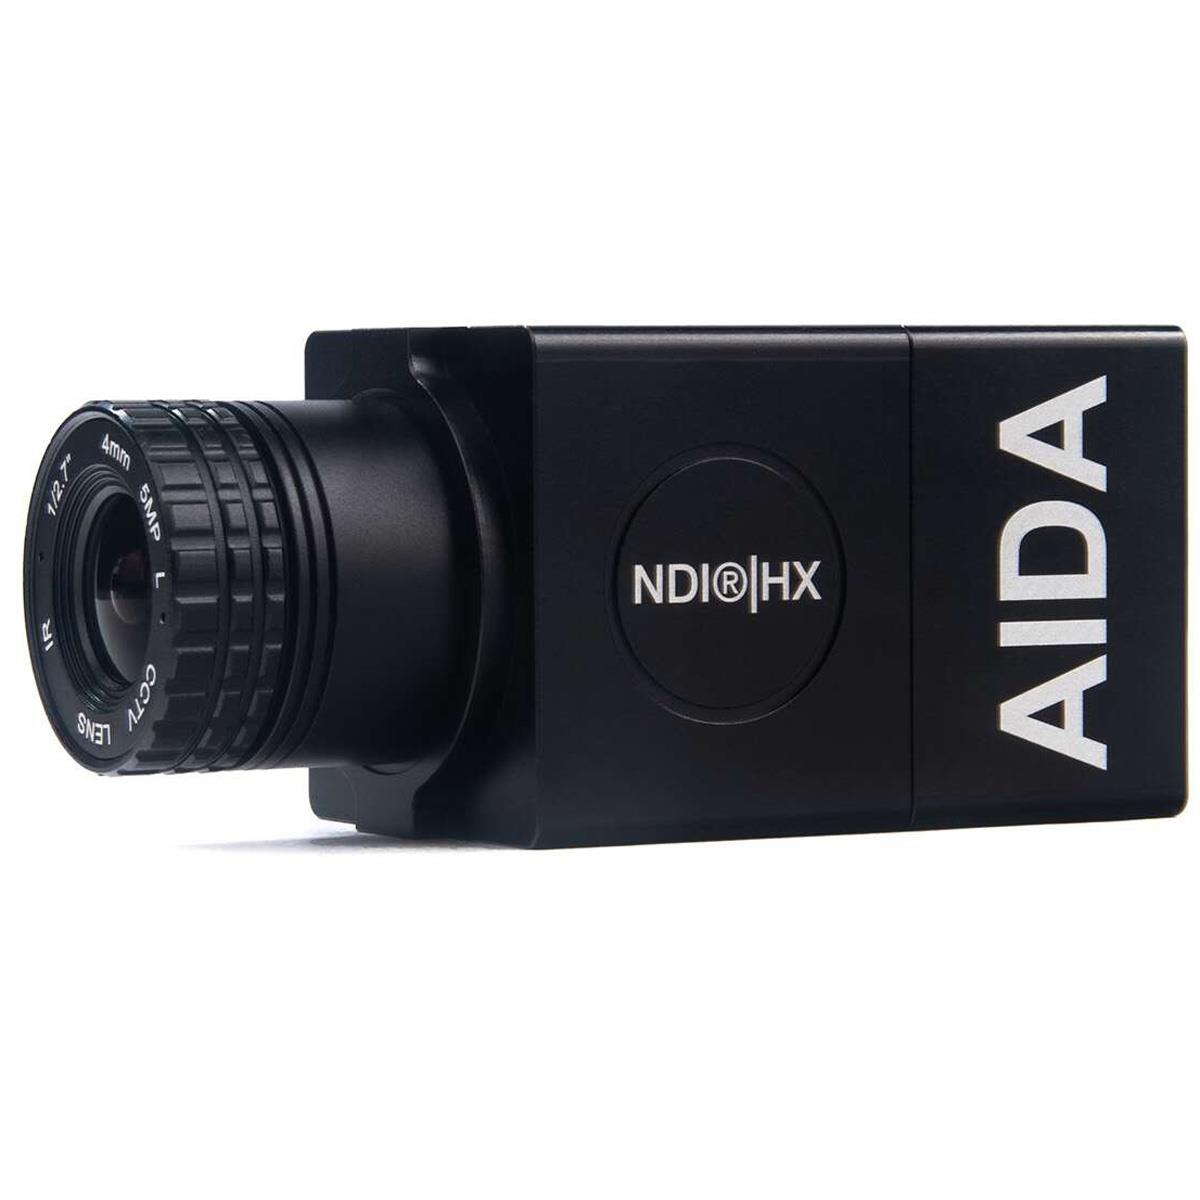 Image of AIDA HD-NDI-CUBE Full HD NDI|HX IP POV Camera